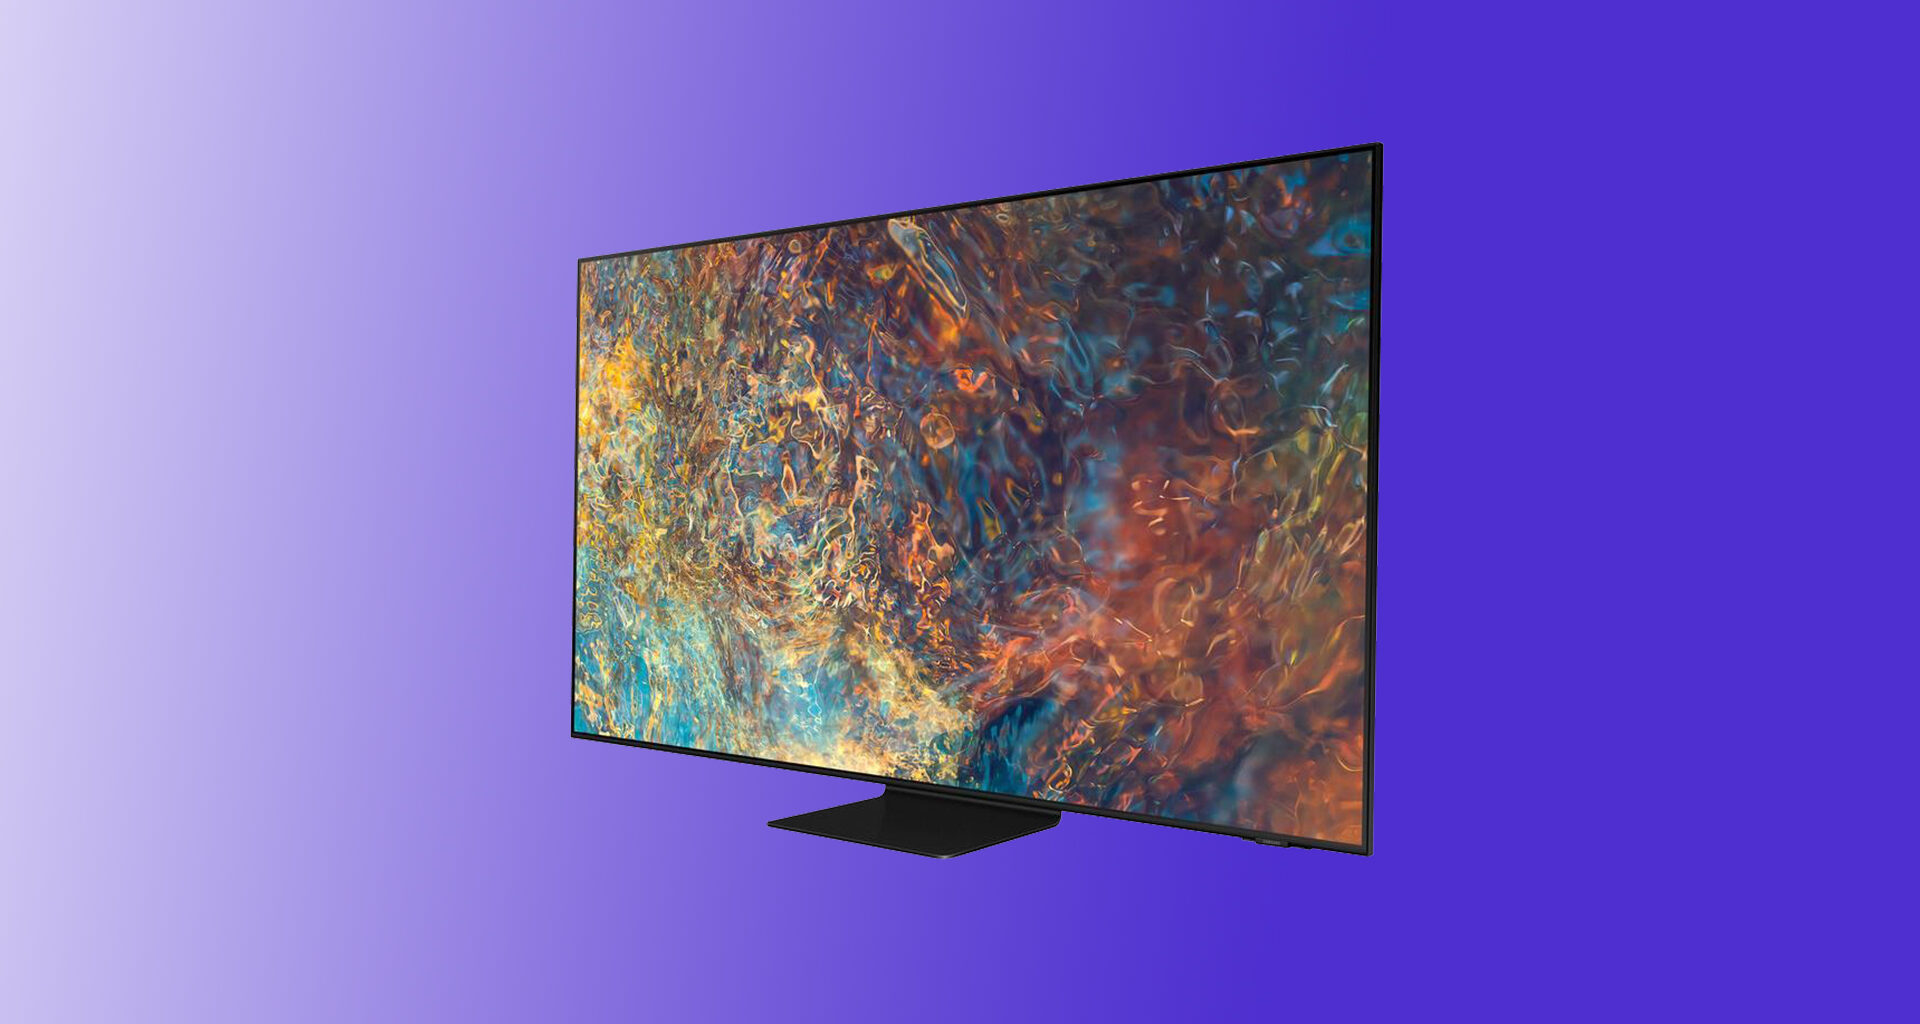 Review: samsung neo qled 4k qn90a é uma das melhores smart tvs do anosung neo qled 4k qn90a é uma das melhores opções de tv no mercado